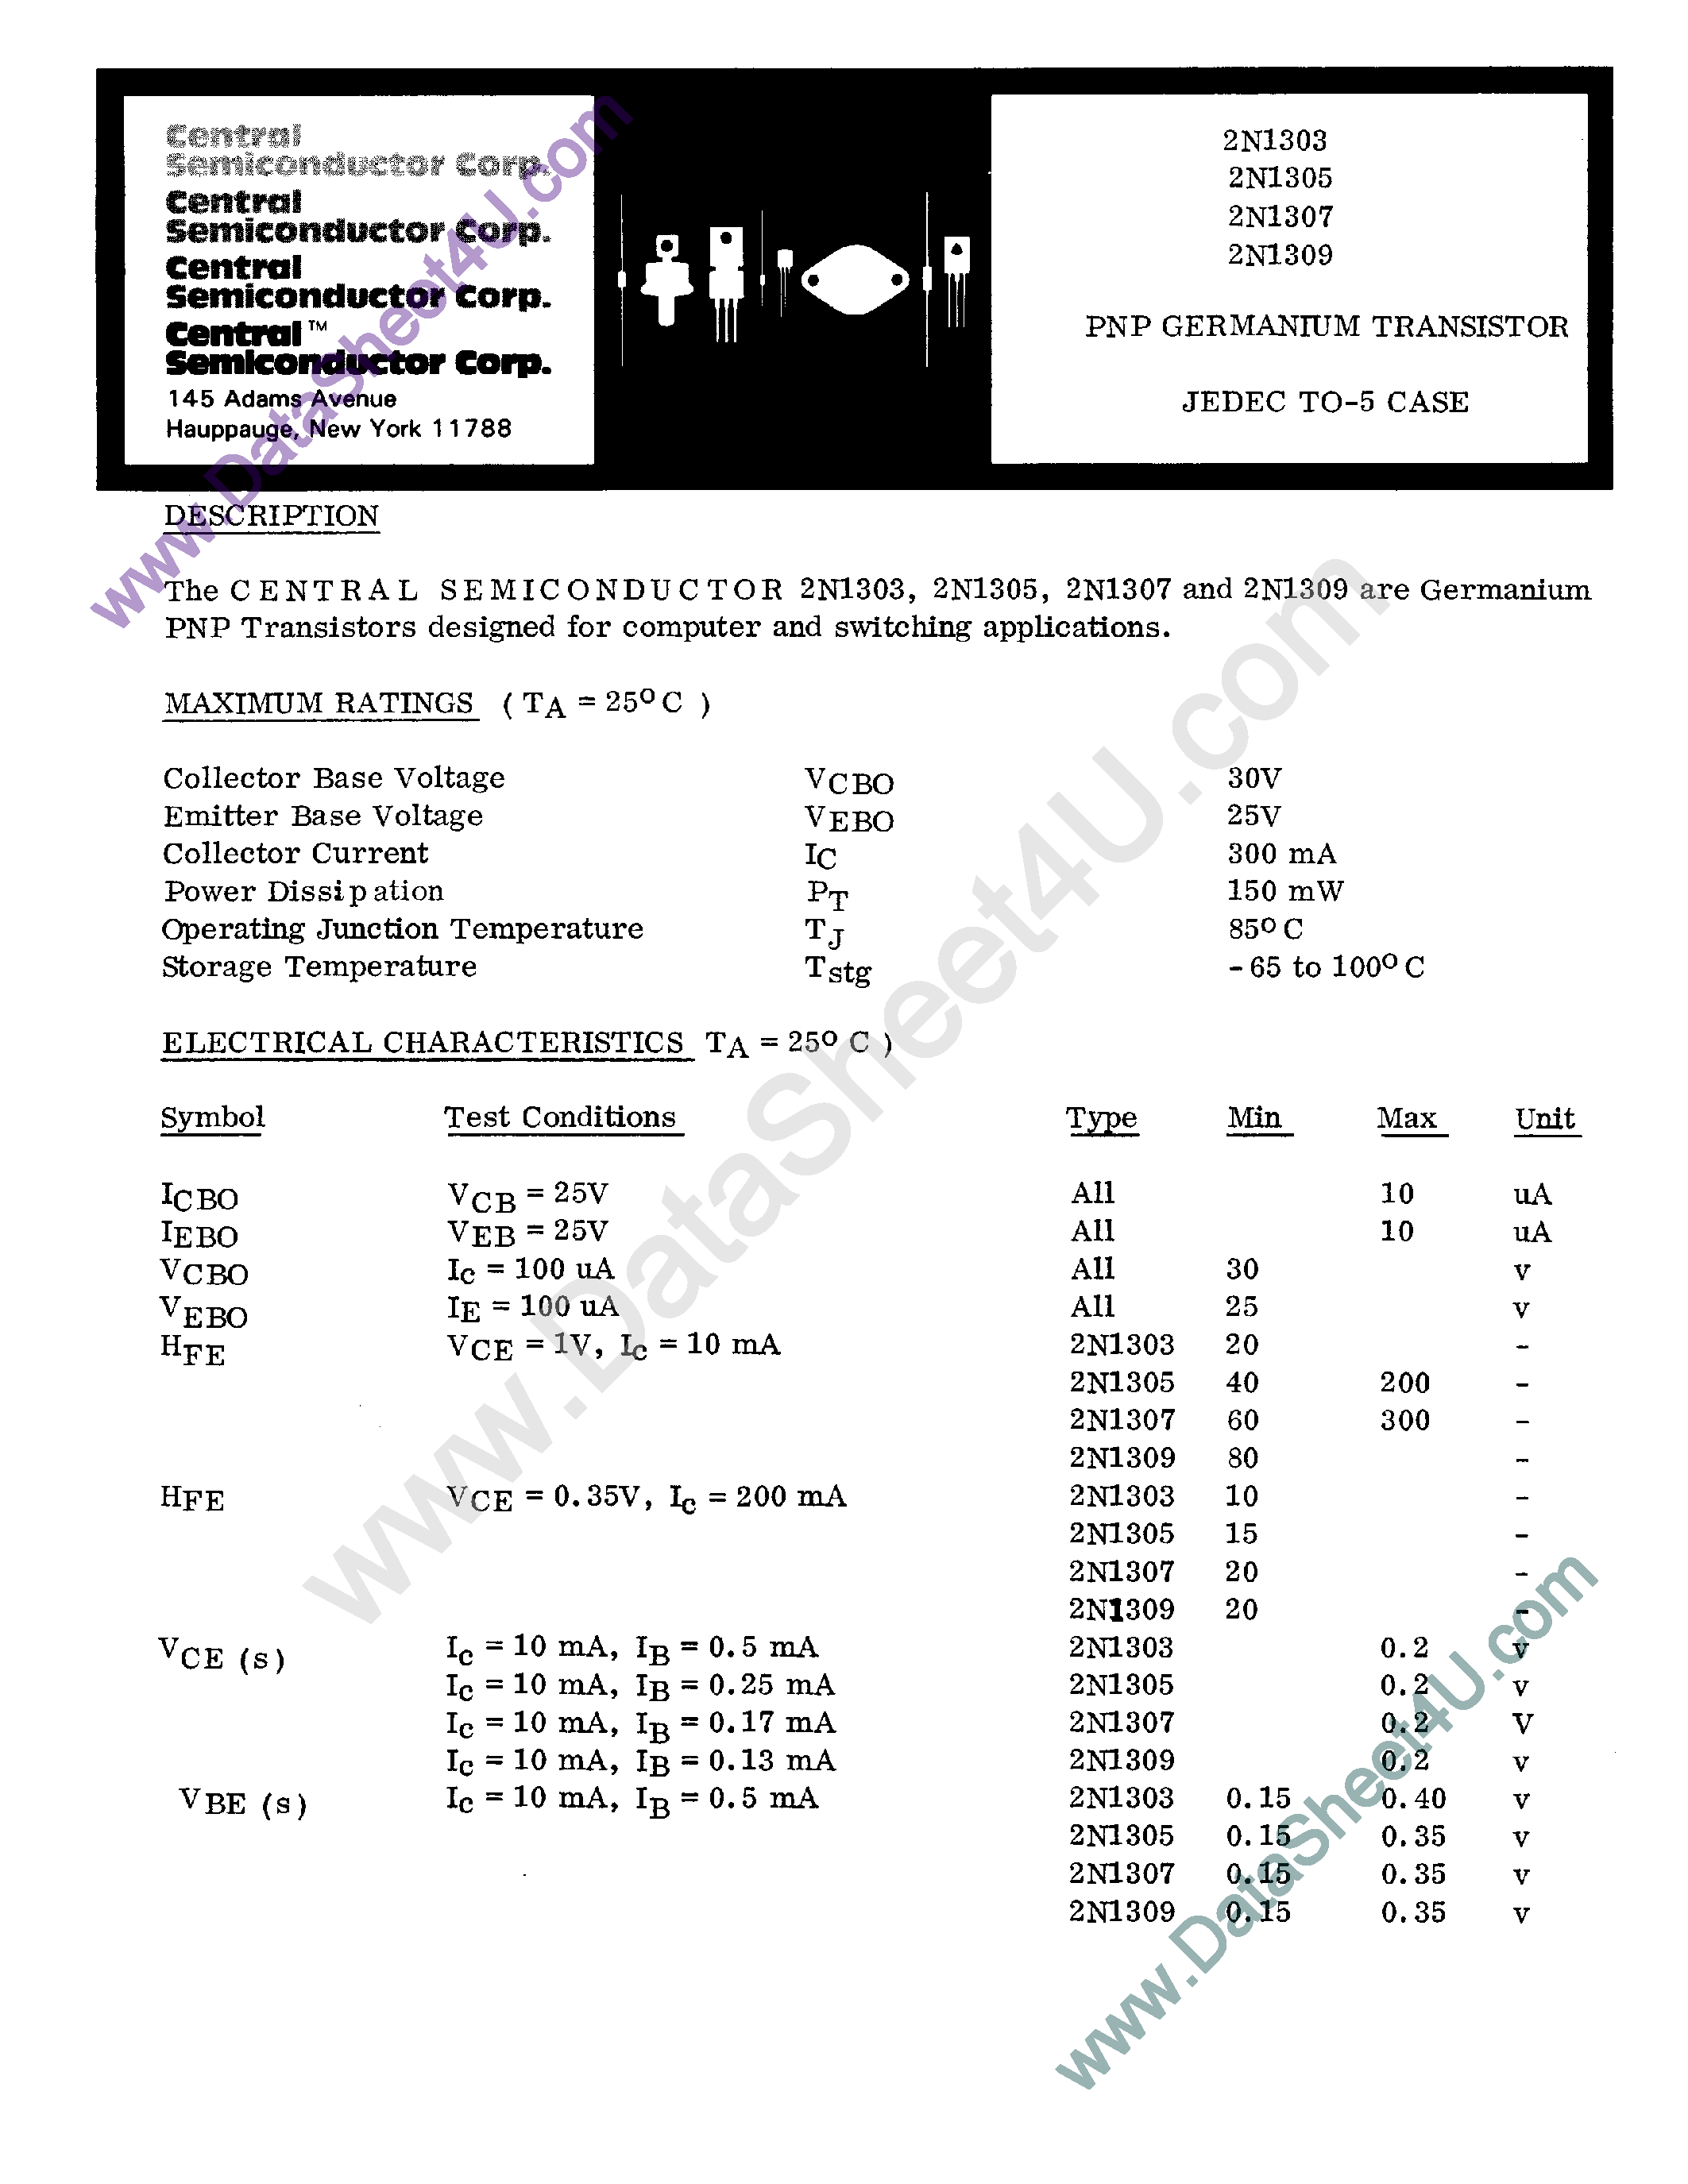 Datasheet 2N1303 - (2N1303 - 2N1309) PNP Germantum Transistor page 1